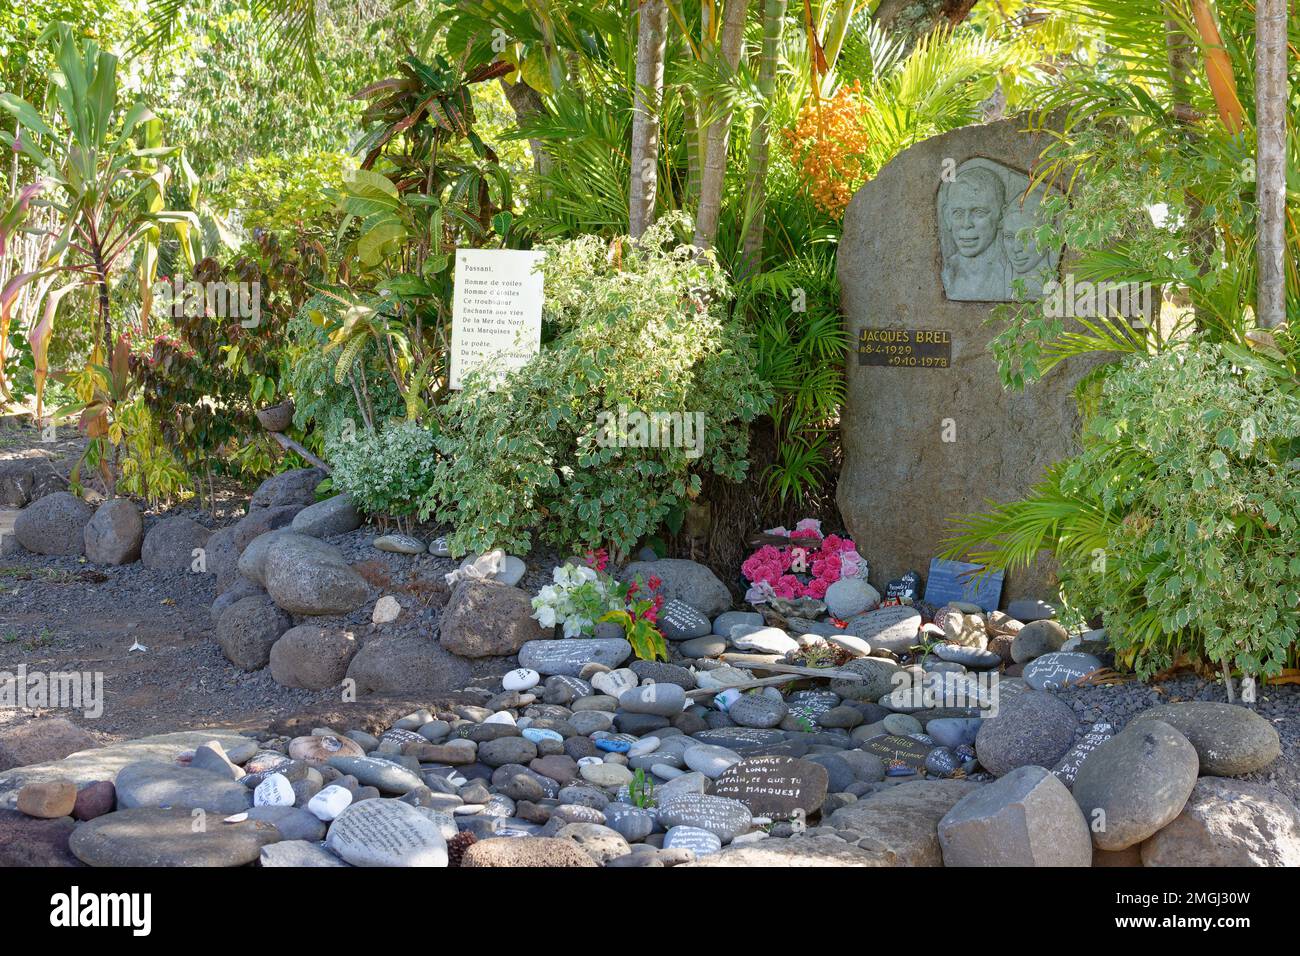 Polinesia Francese, Hiva Oa: Il cimitero di Atuona dove Jacques Brel è sepolto. Tomba del cantante Jacques Brel Foto Stock